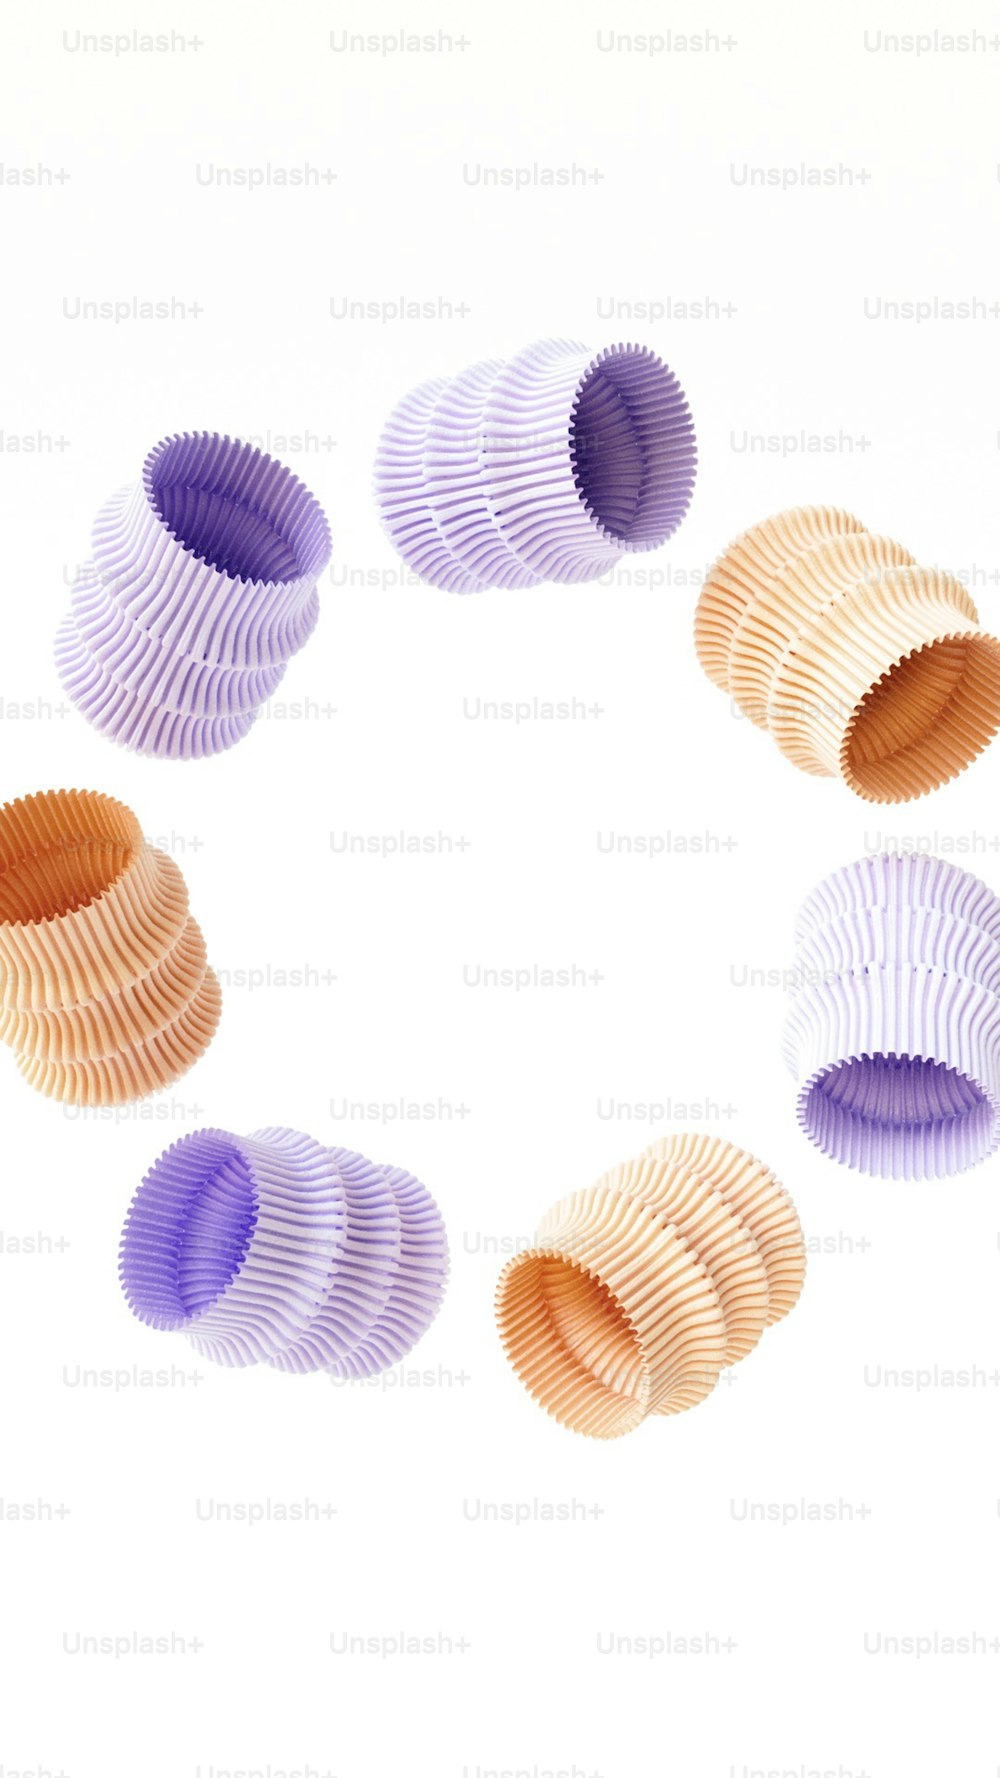 Un círculo formado por diferentes colores de papel